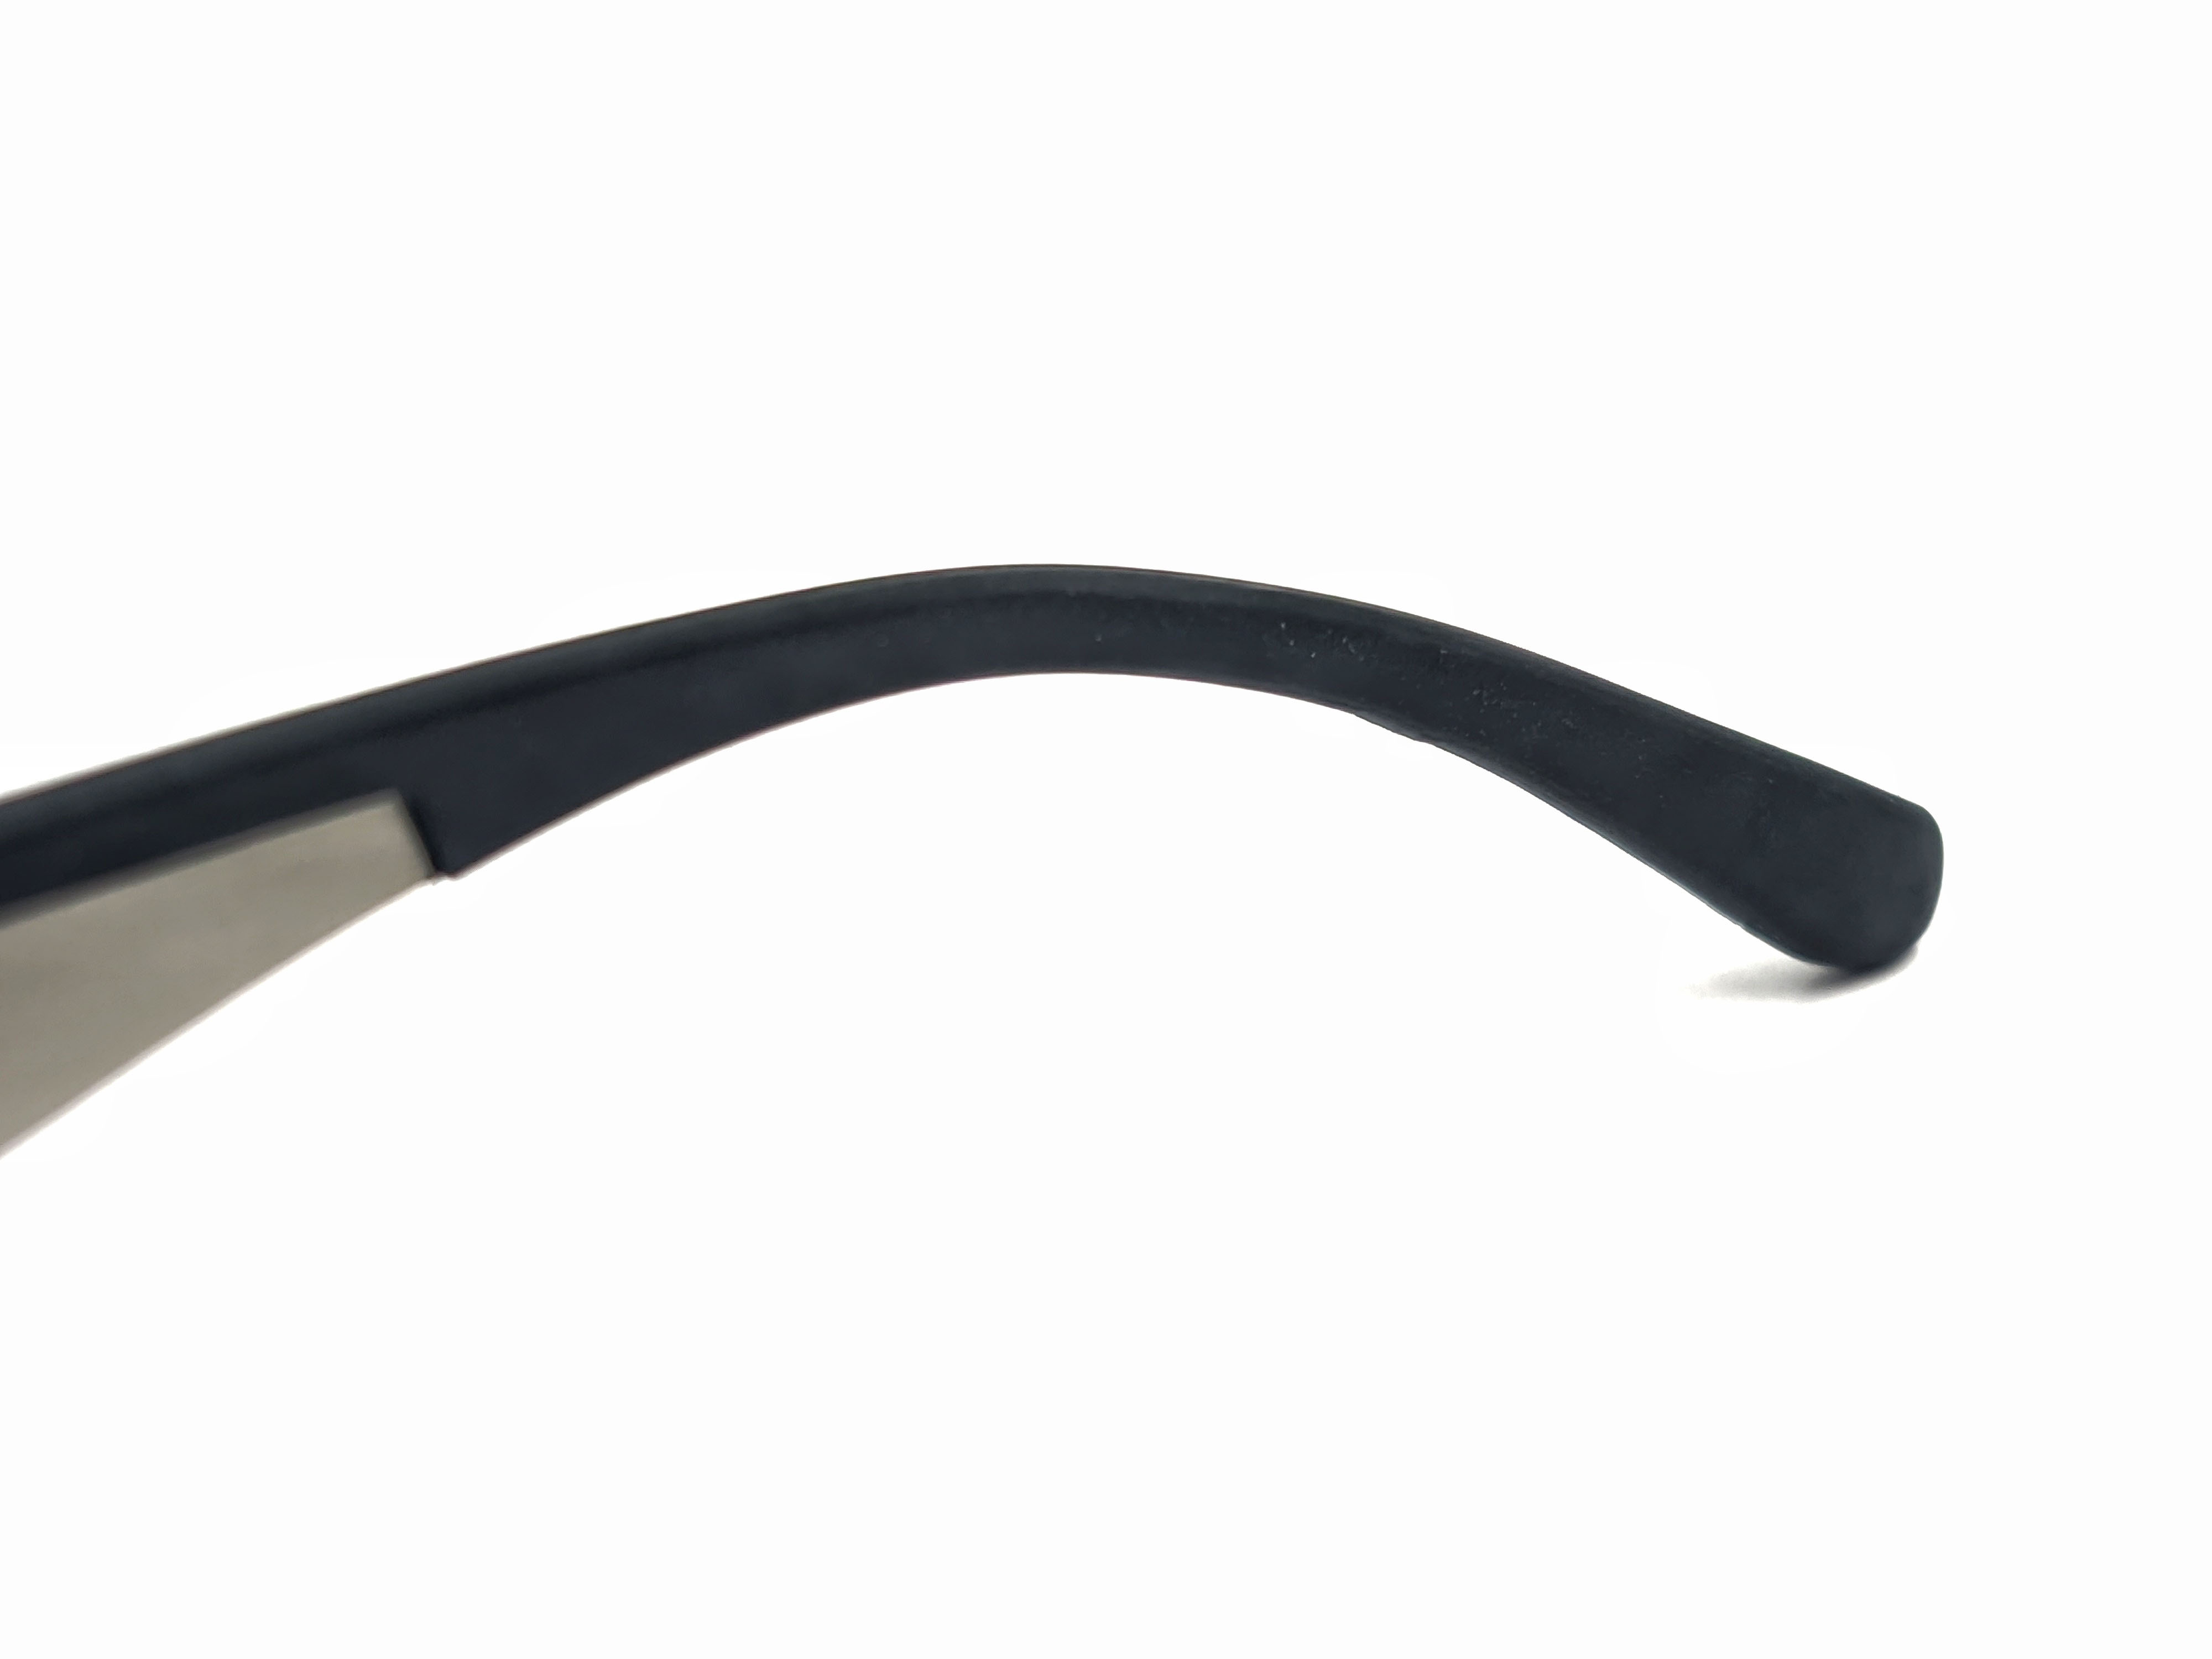 Gafas de sol cuadradas finas de acero para hombres Gafas Gensun Fabricantes de gafas más grandes Fabricantes chinos de gafas de sol